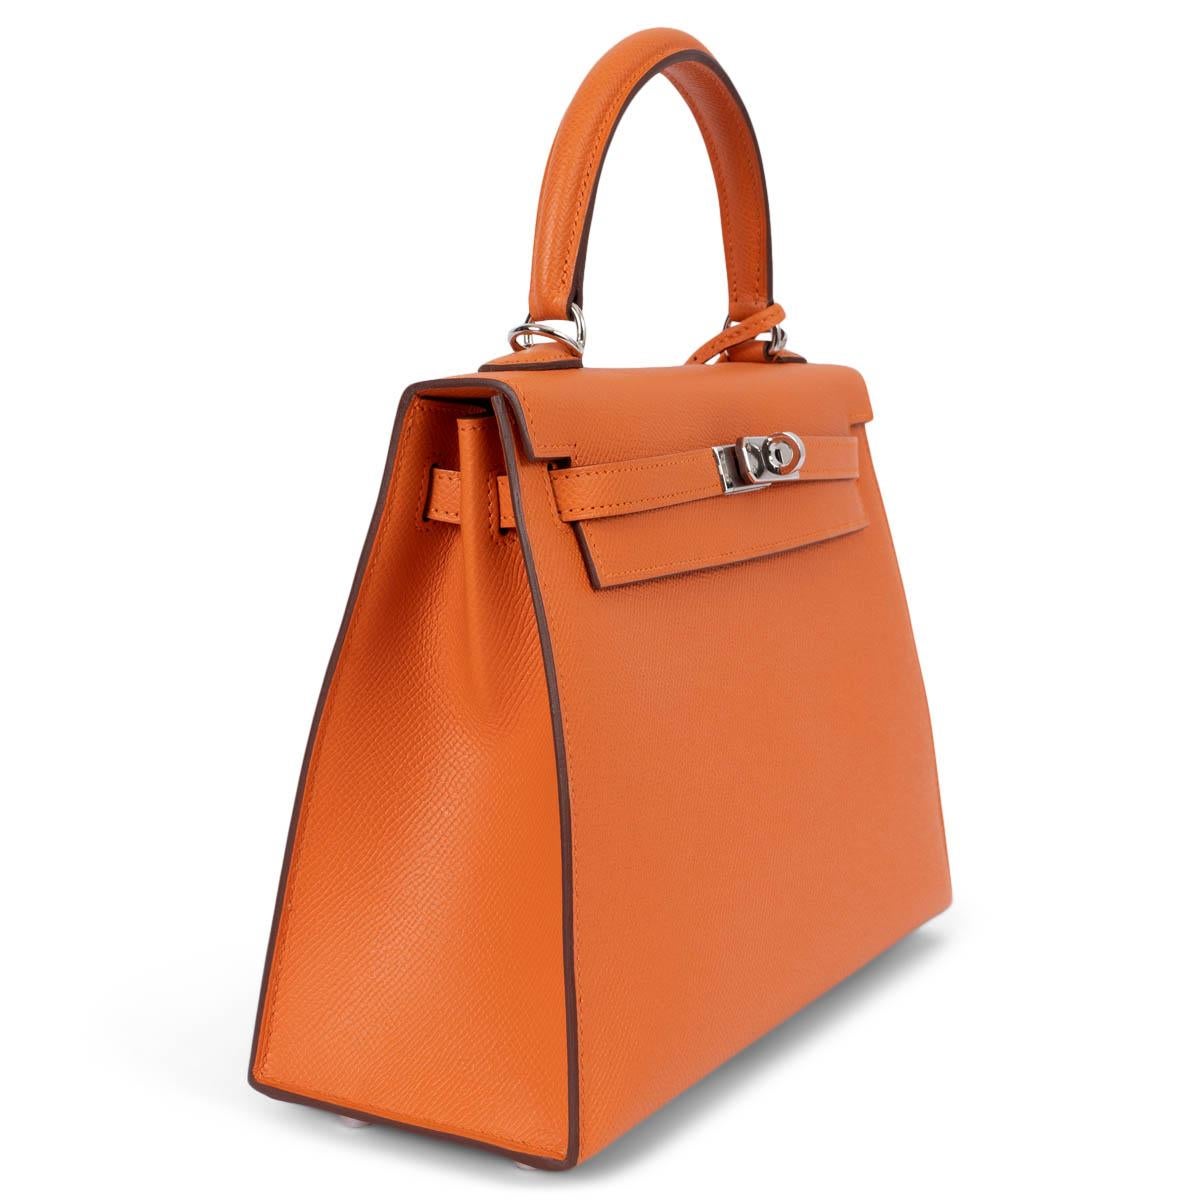 100% authentische Hermès Kelly 25 Sellier Tasche aus orangefarbenem Veau Epsom Leder mit Palladiumbeschlägen. Gefüttert mit Chevre (Ziegenleder), mit einer offenen Tasche auf der Vorderseite und einer Tasche mit Reißverschluss auf der Rückseite.